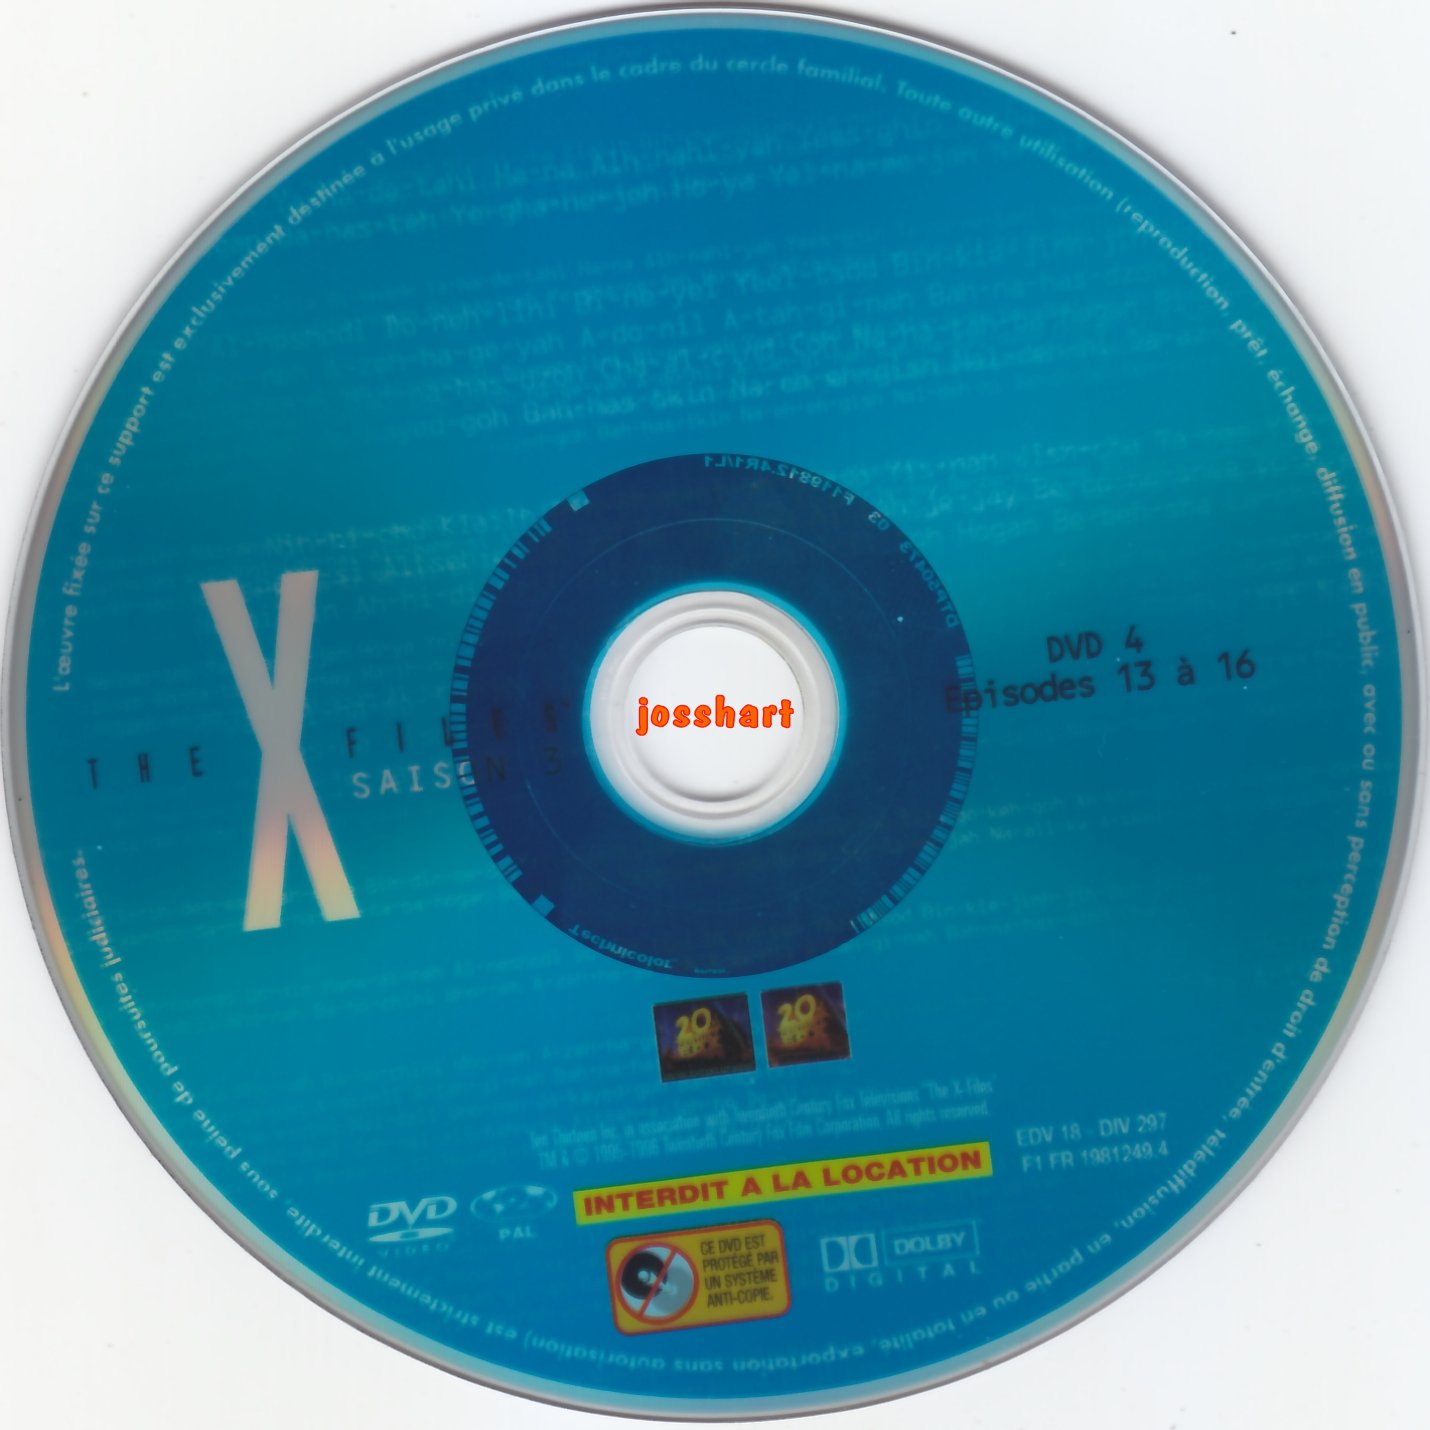 The X Files Saison 3 DVD 4 v2